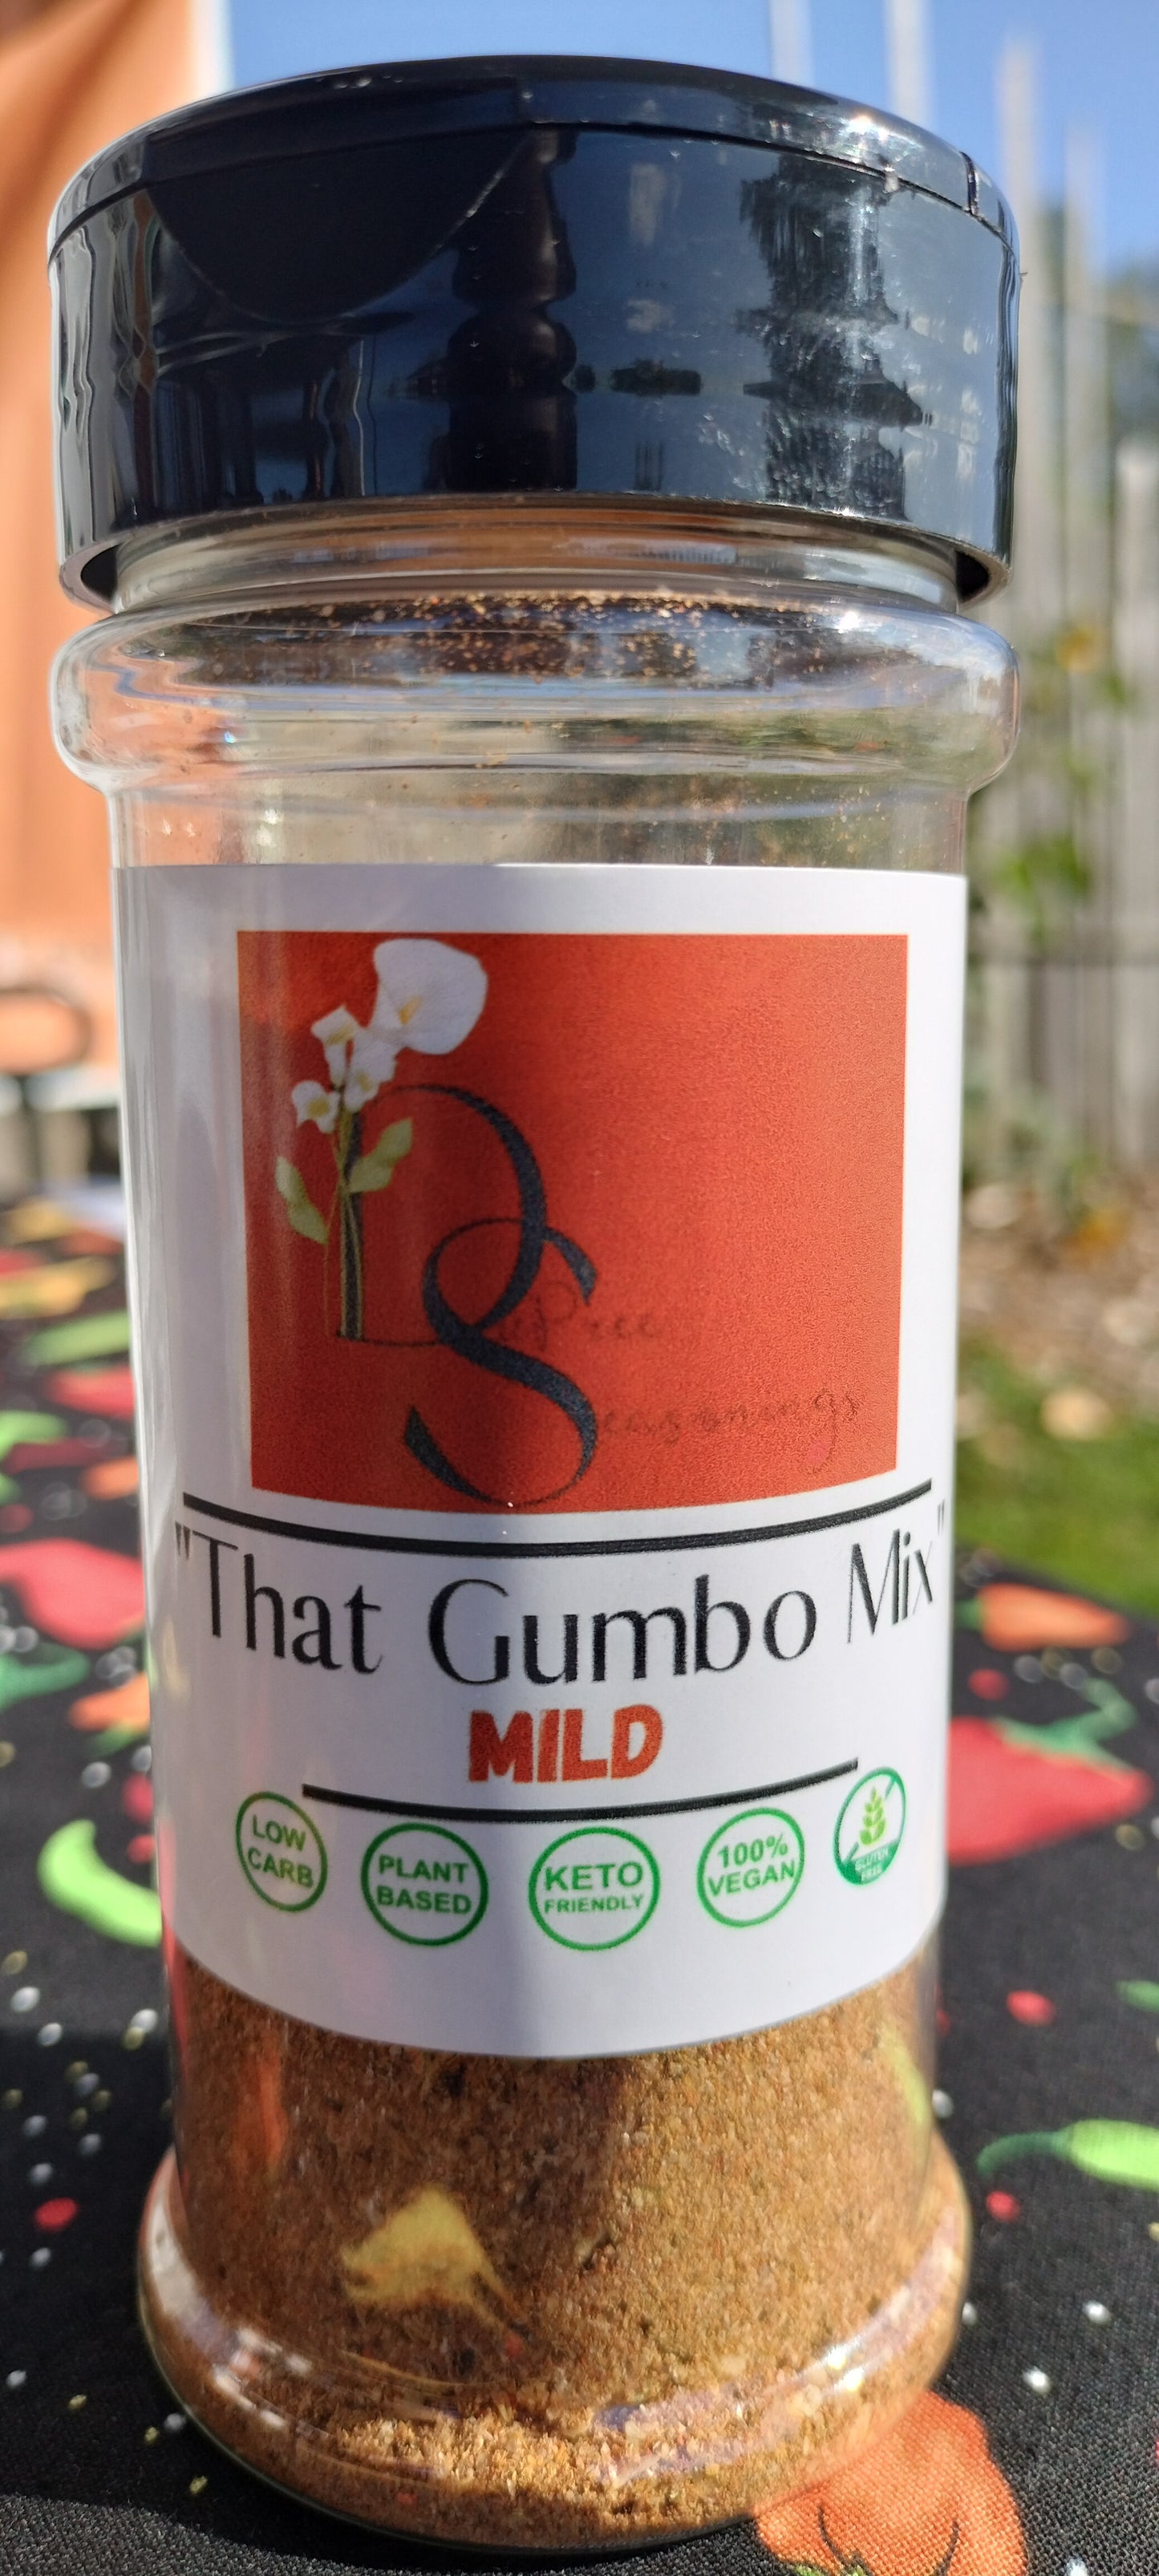 That Gumbo Mix Mild